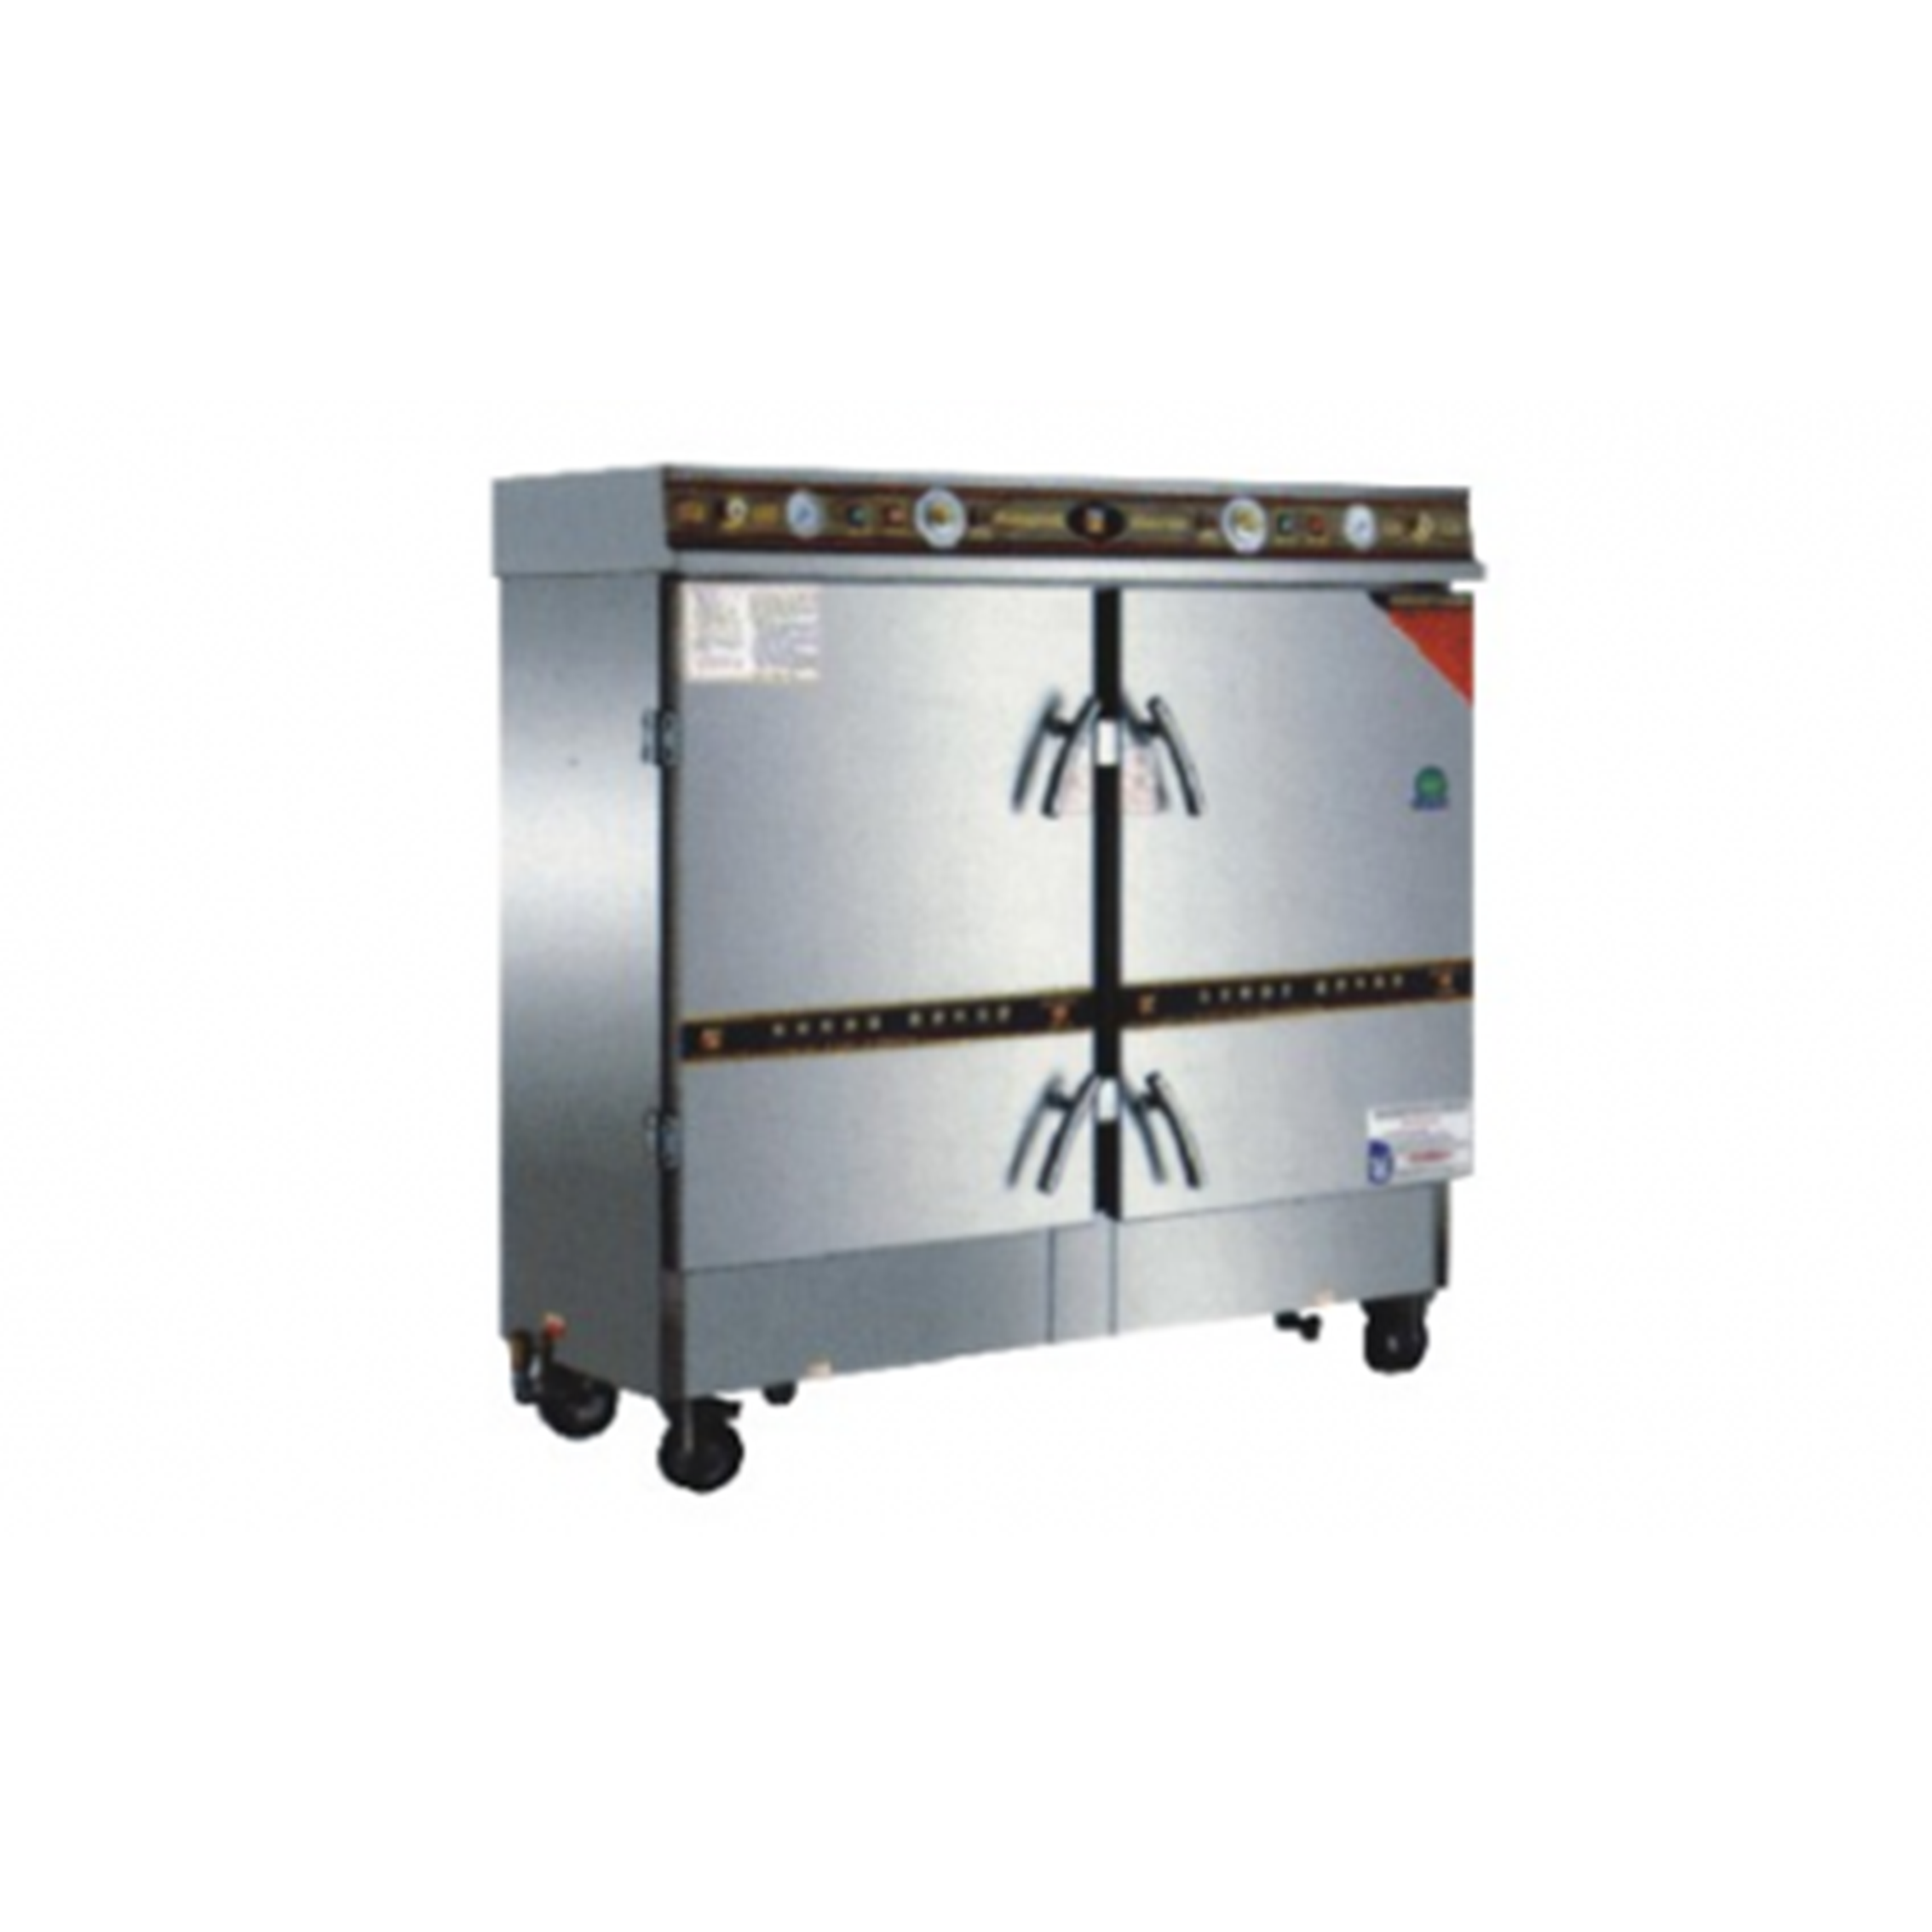 厨房设备安装技术标准生产流程